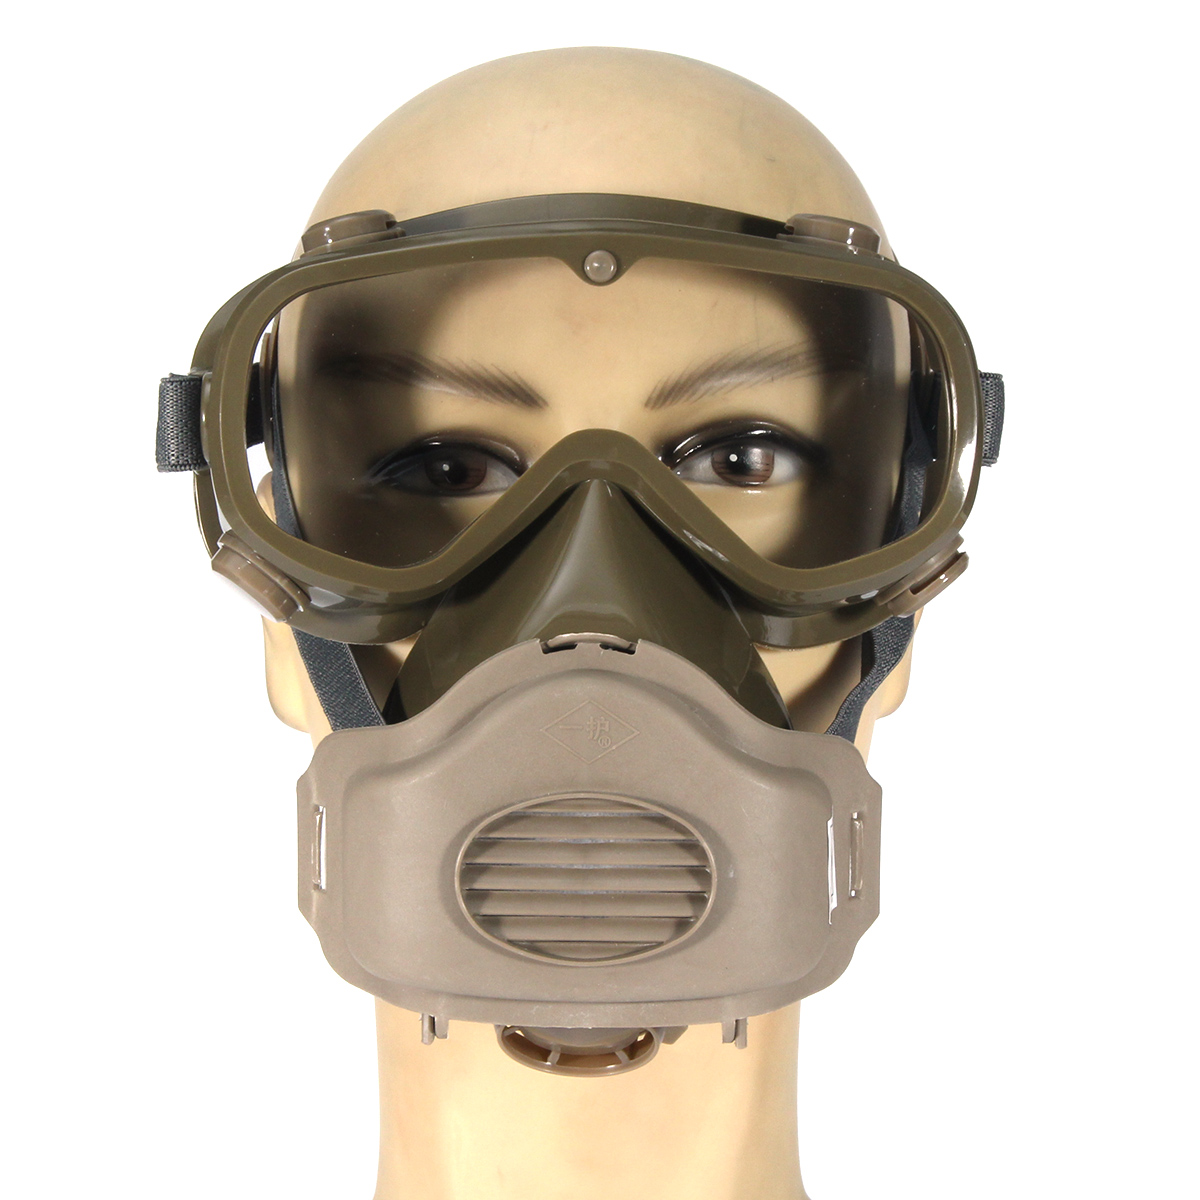 Маска для защиты дыхания. Пылезащитная маска. Маска респиратор с очками. Ветрозащитная пылезащитная маска. Маска защитная для дыхания от пыли.